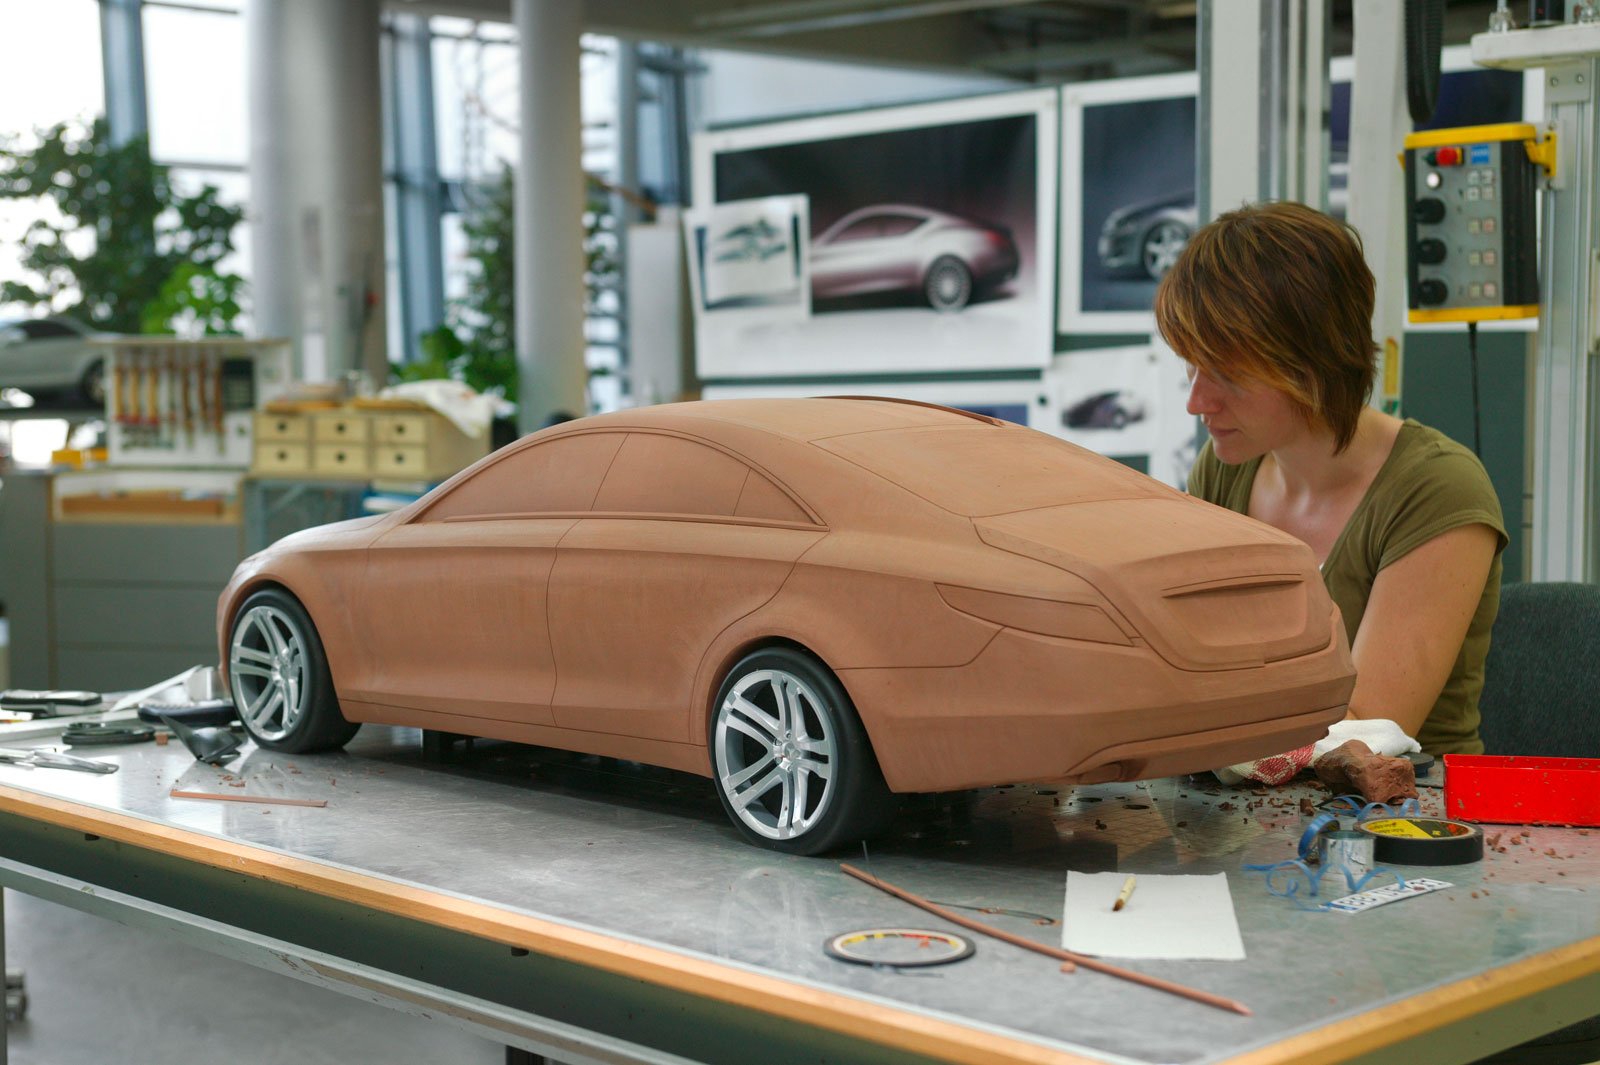 Машины которые можно собирать. 3d моделирование в автопромышленности. Муляж автомобиля. Пластилиновые макеты автомобилей. Моделирование автомобилей.